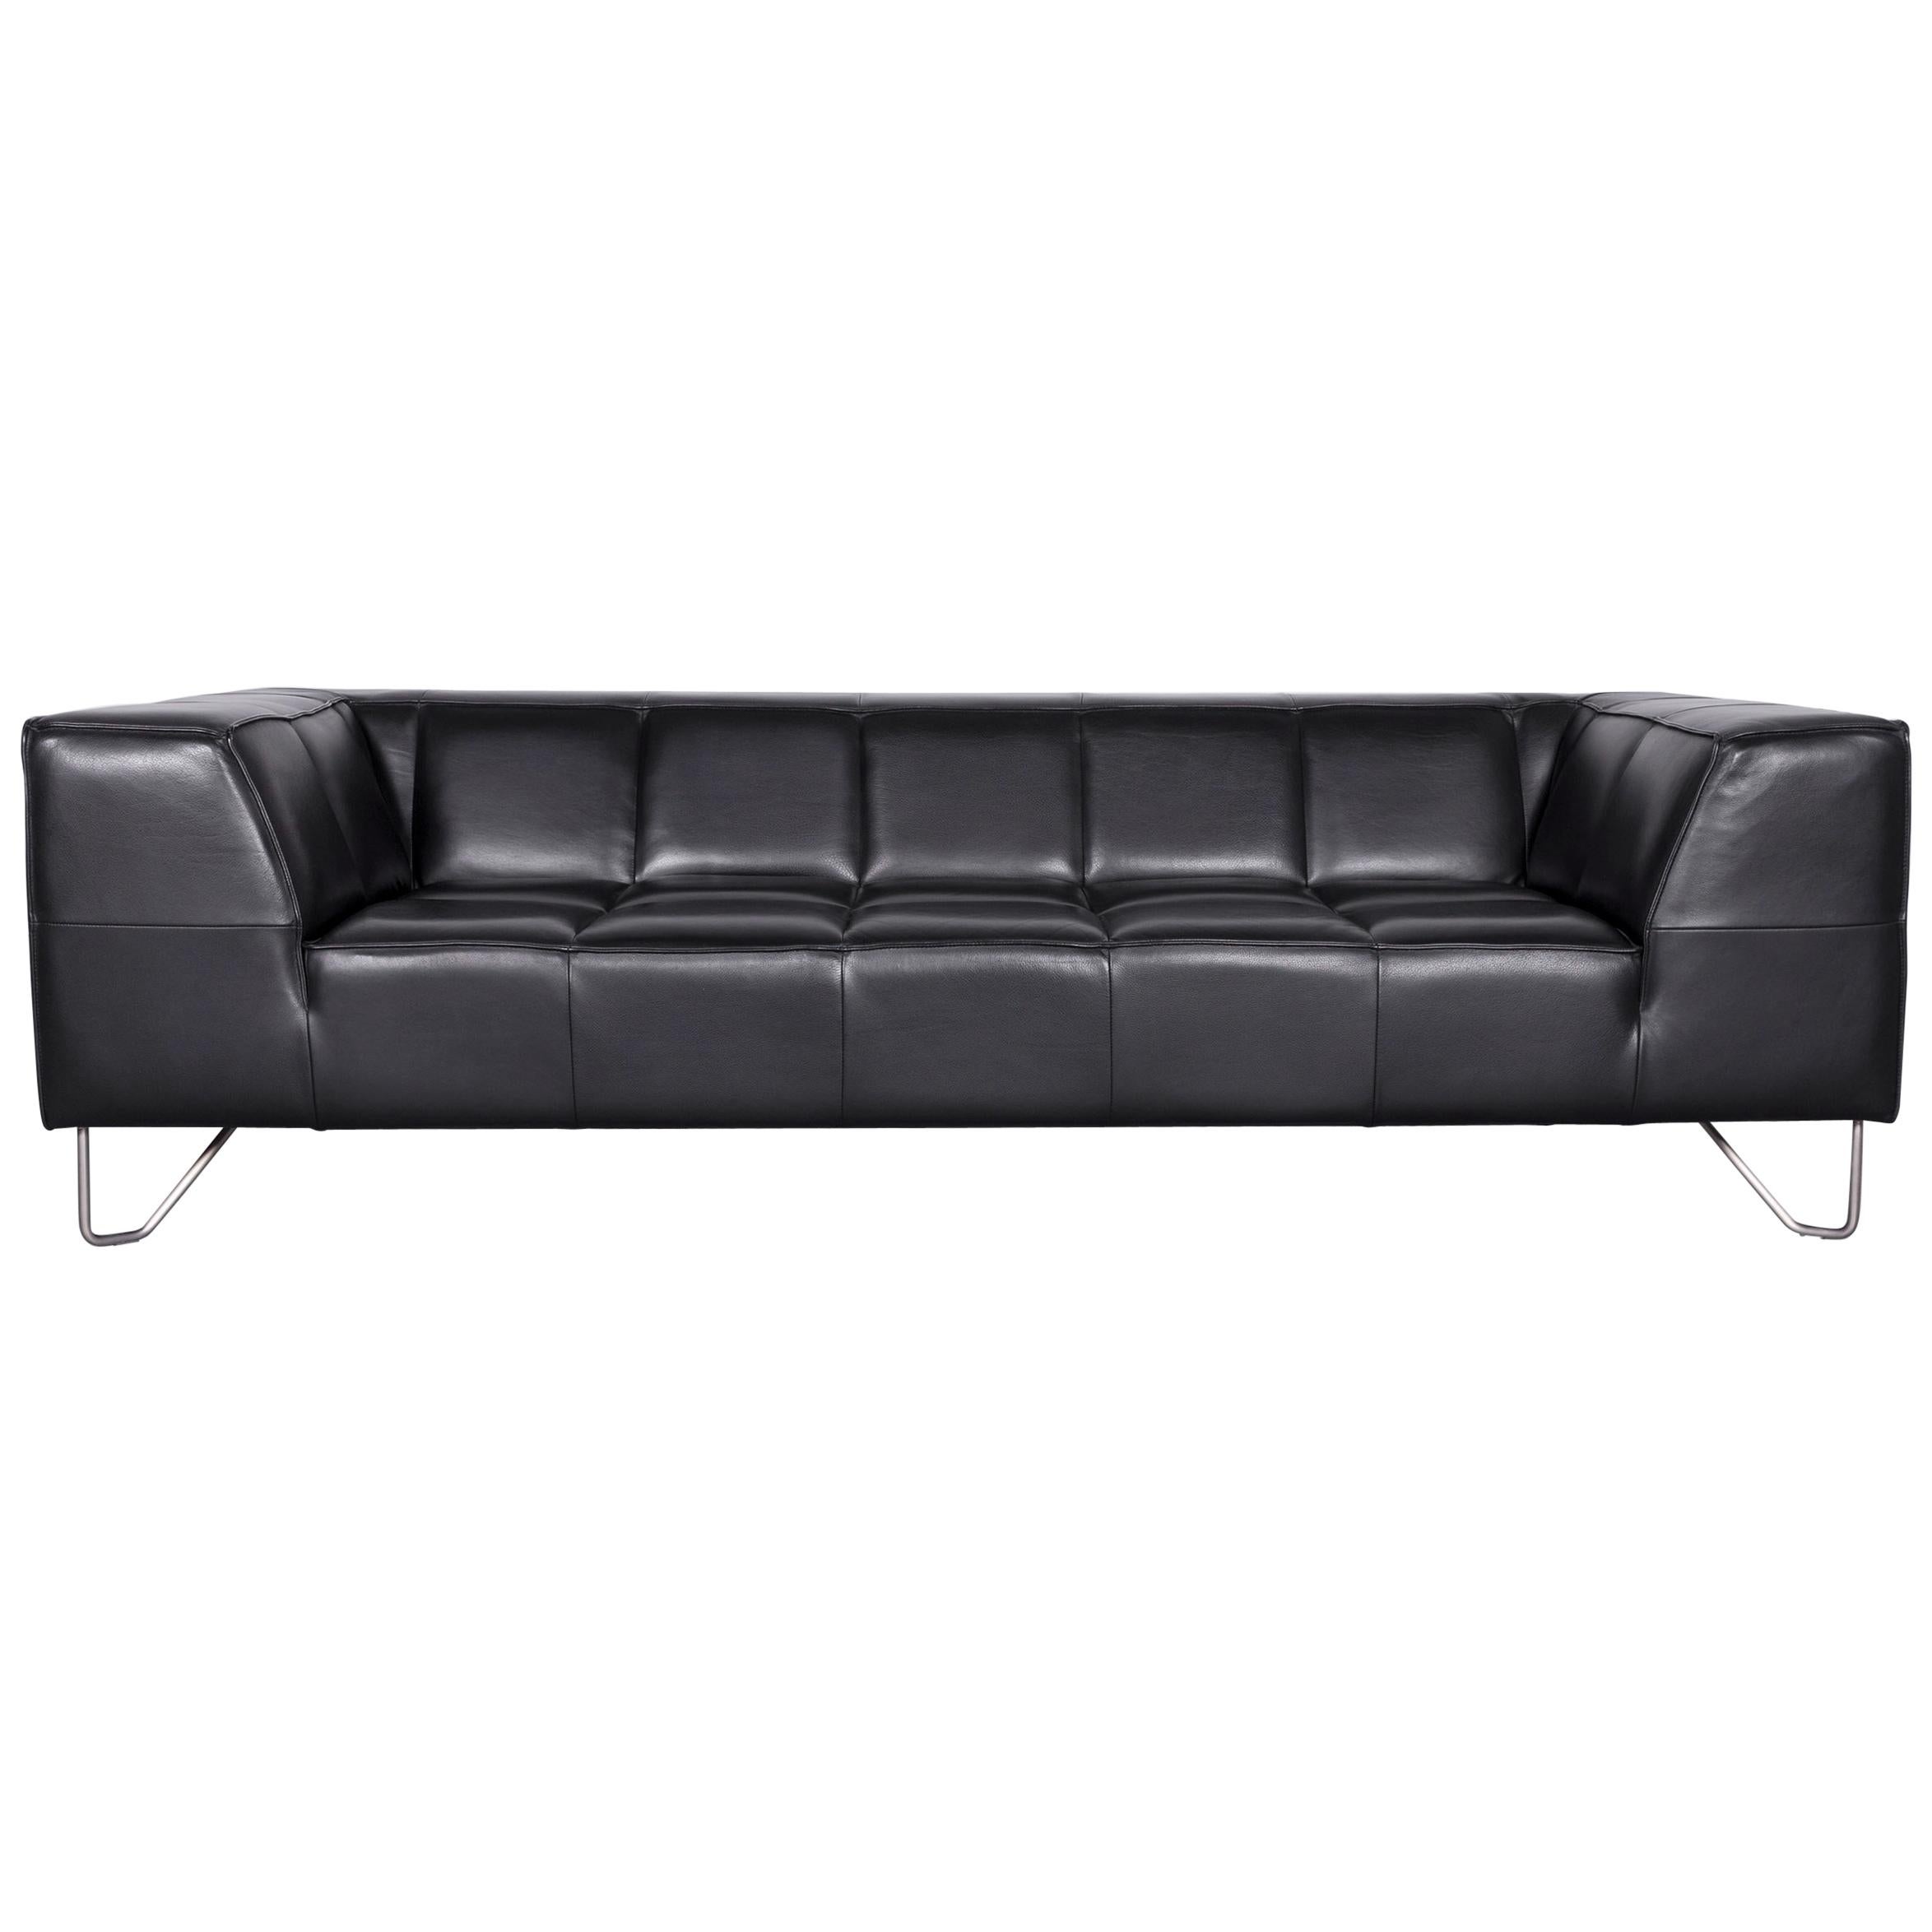 Boconcept Milos Designer Sofa Black Leather Three-Seat Couch